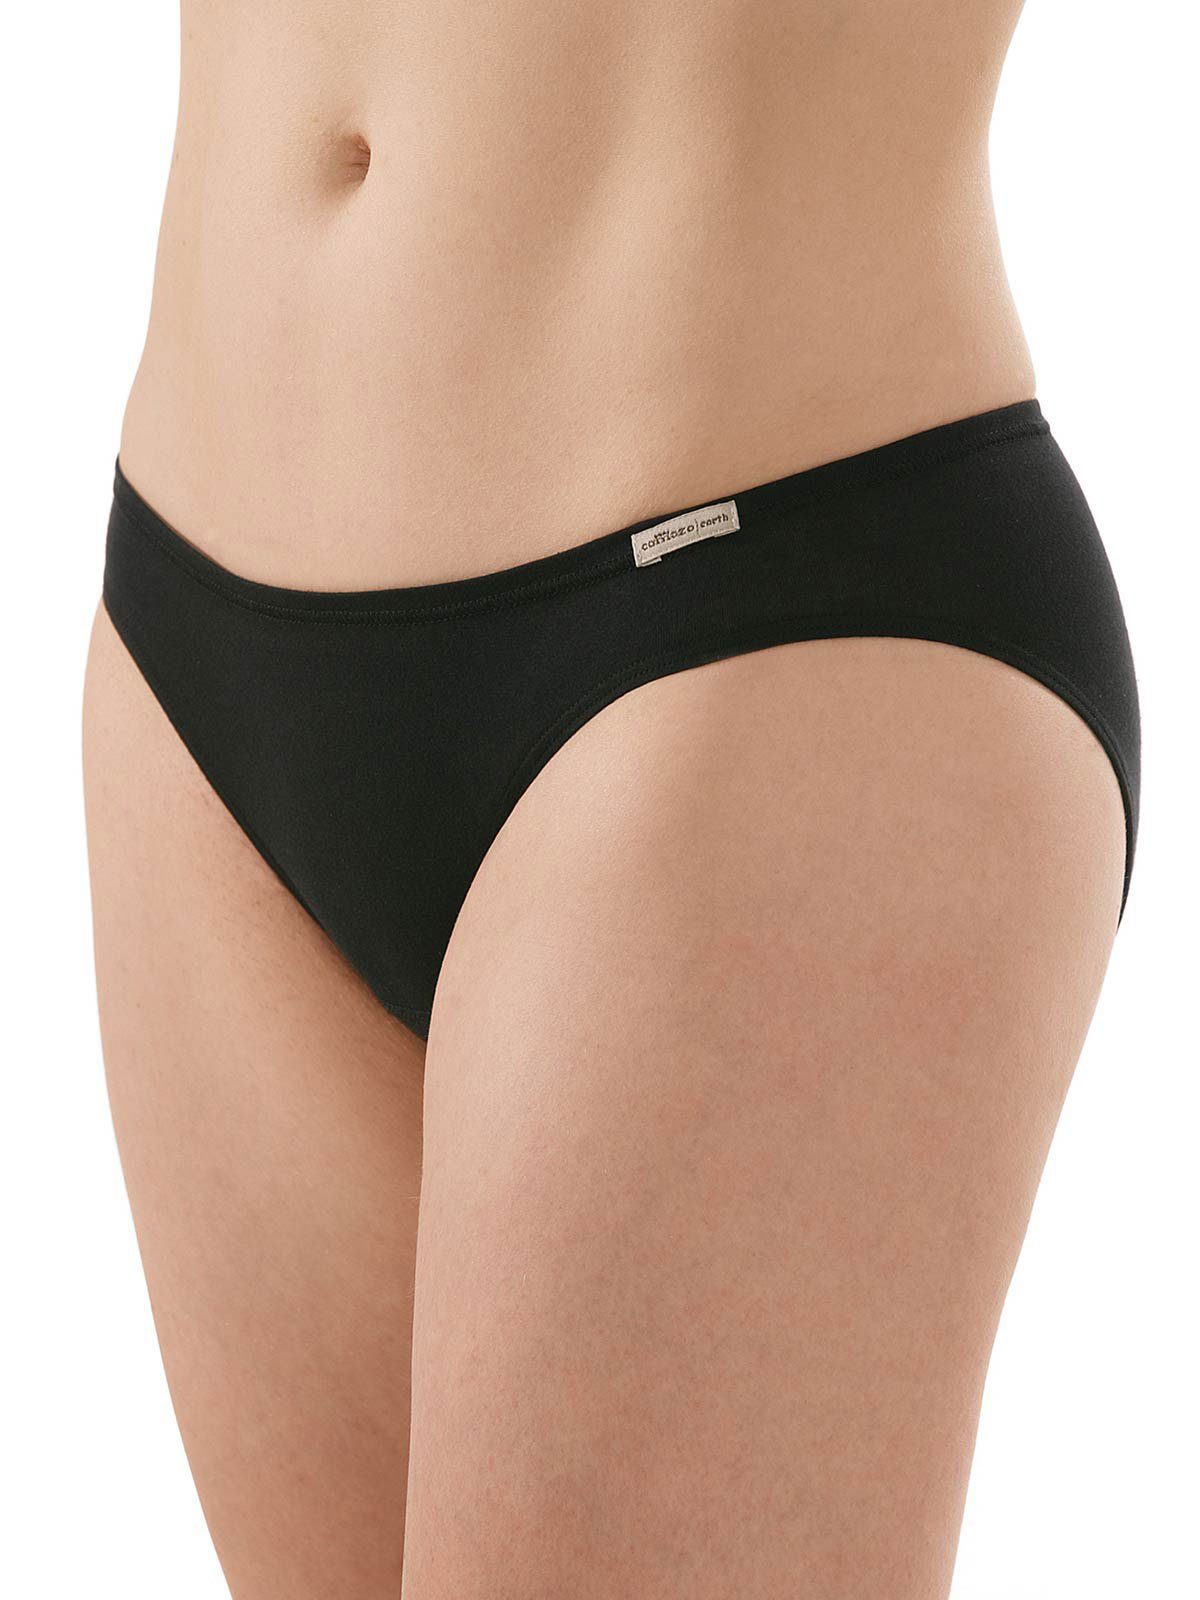 grau-melange-schwarz Damen Jazzpants 6-St) aus Vegan Baumwolle Pack Slips (Packung, Jazz-Pants COMAZO 6er